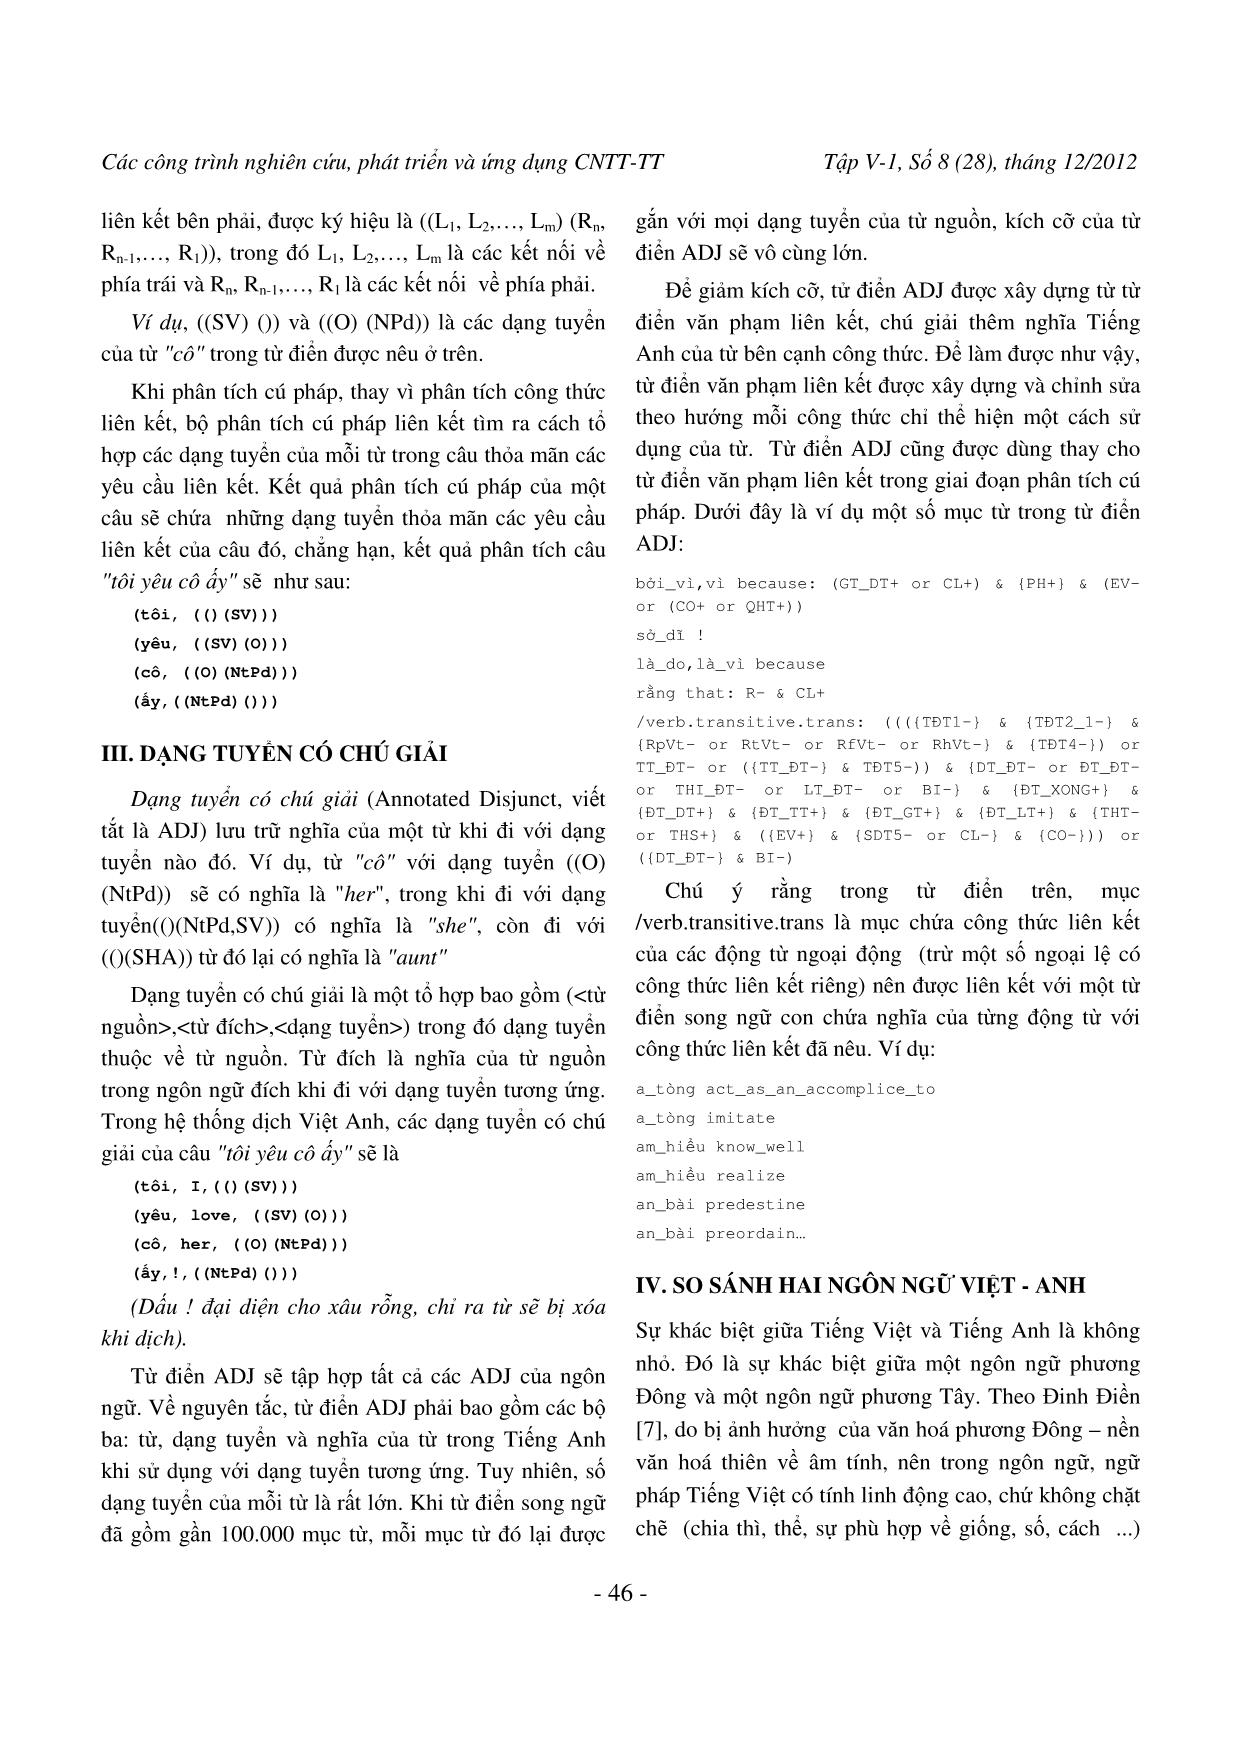 Ứng dụng văn phạm liên kết trong dịch máy Việt – Anh trang 3